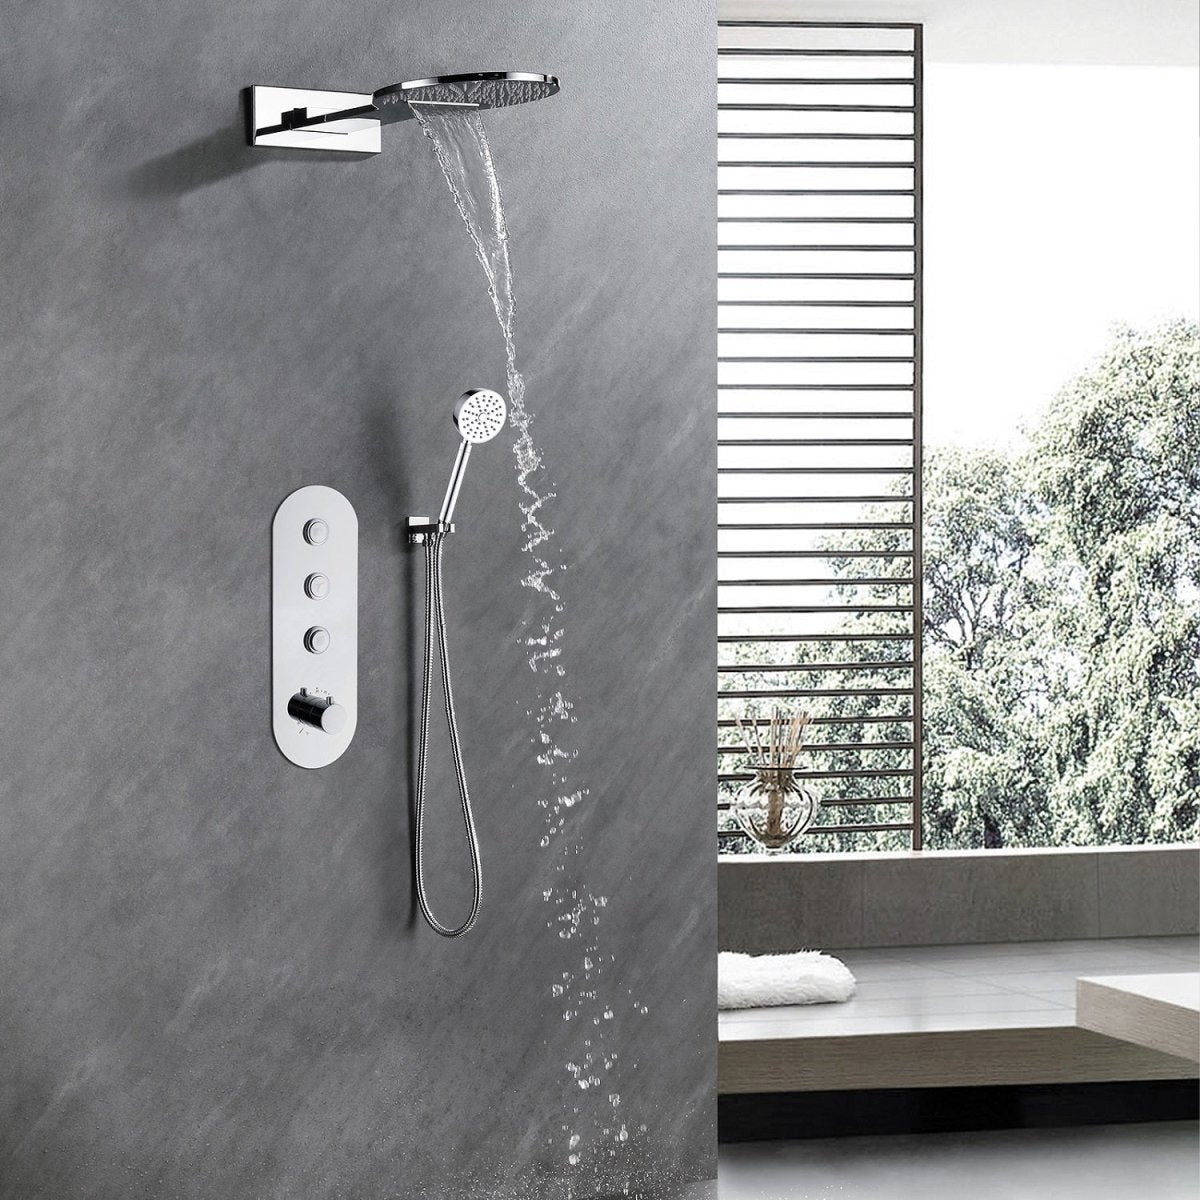 2-Handle 2-Spray High Pressure Shower Faucet Polished Chrome - buyfaucet.com